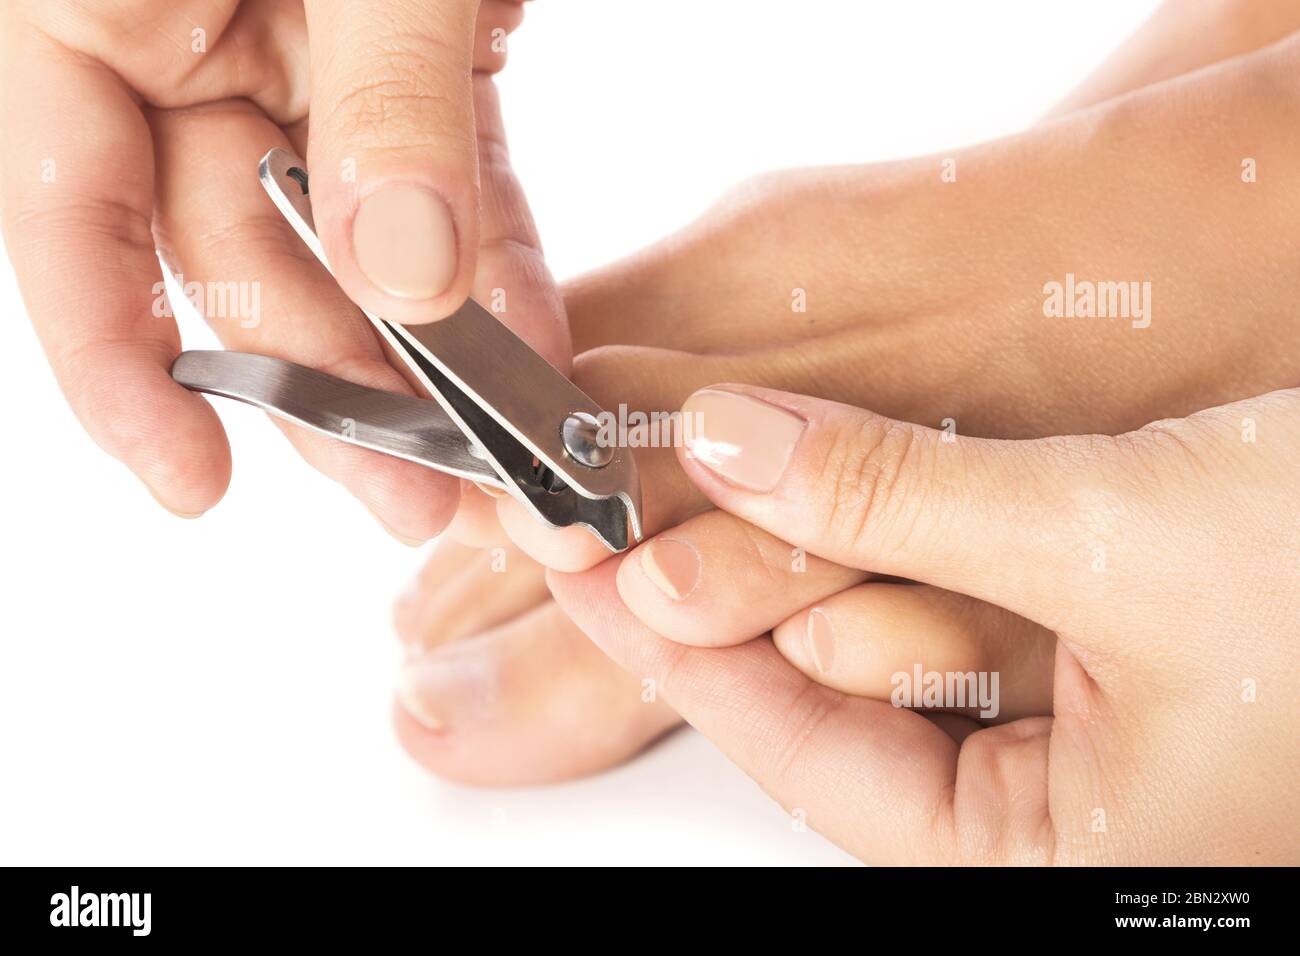 Ногтями можно резать. Подстригание ногтей на ногах. Стричь ногти. Женщина стрижет ногти.